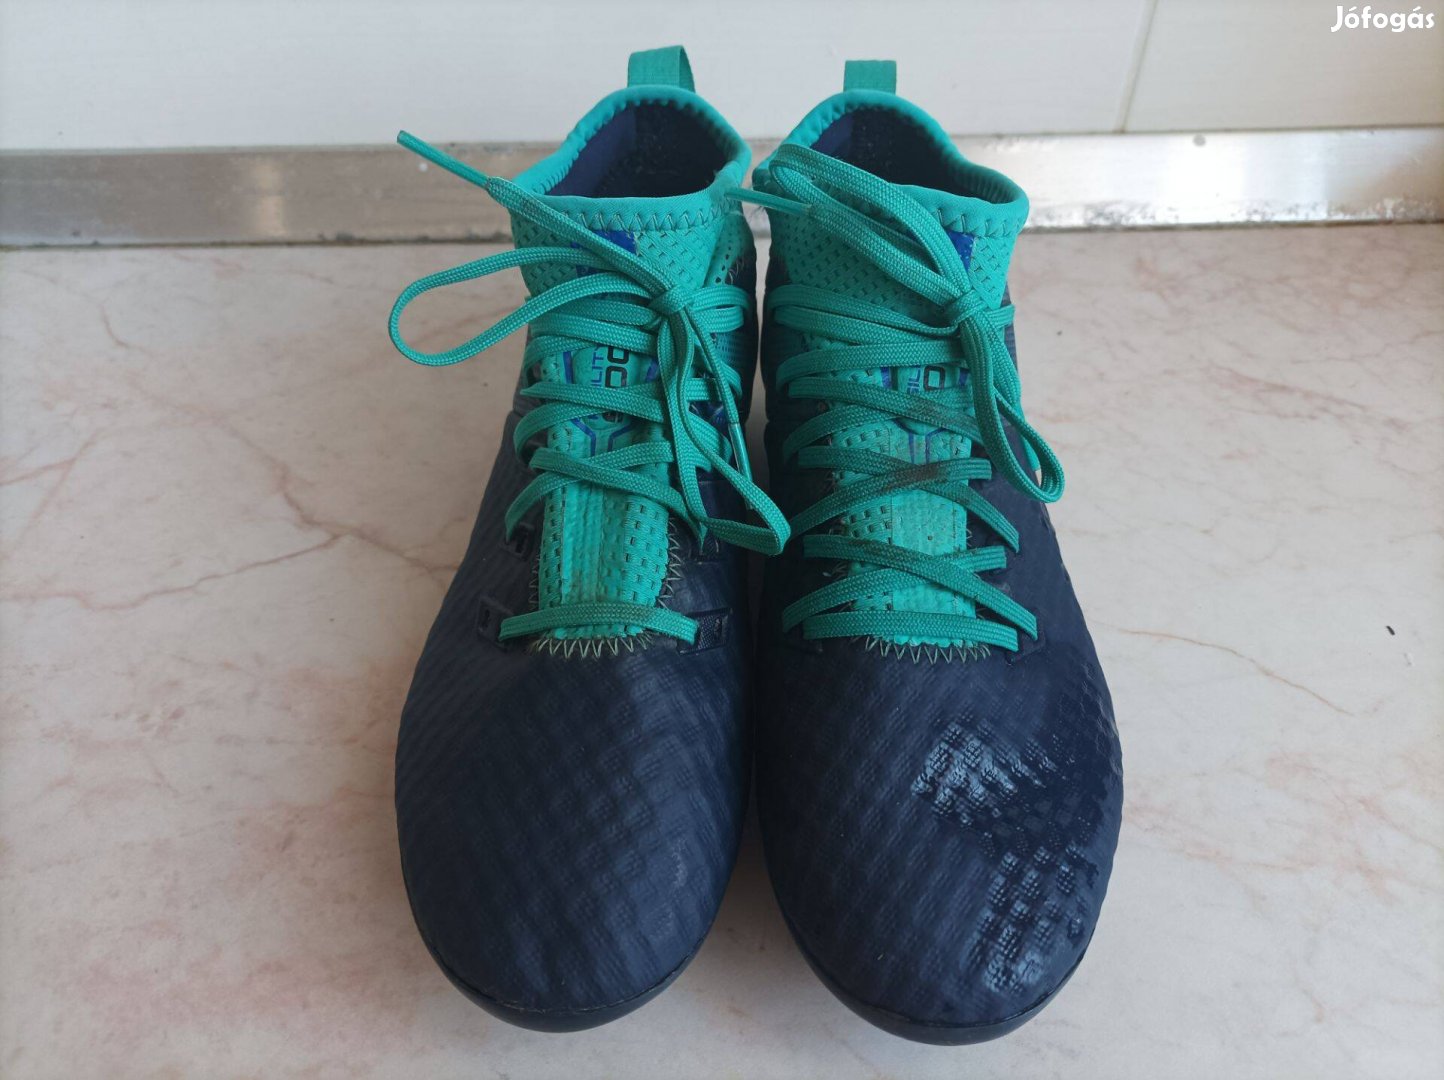 Eladó egy pár Kipsta Agility 900 márkájú foci cipő